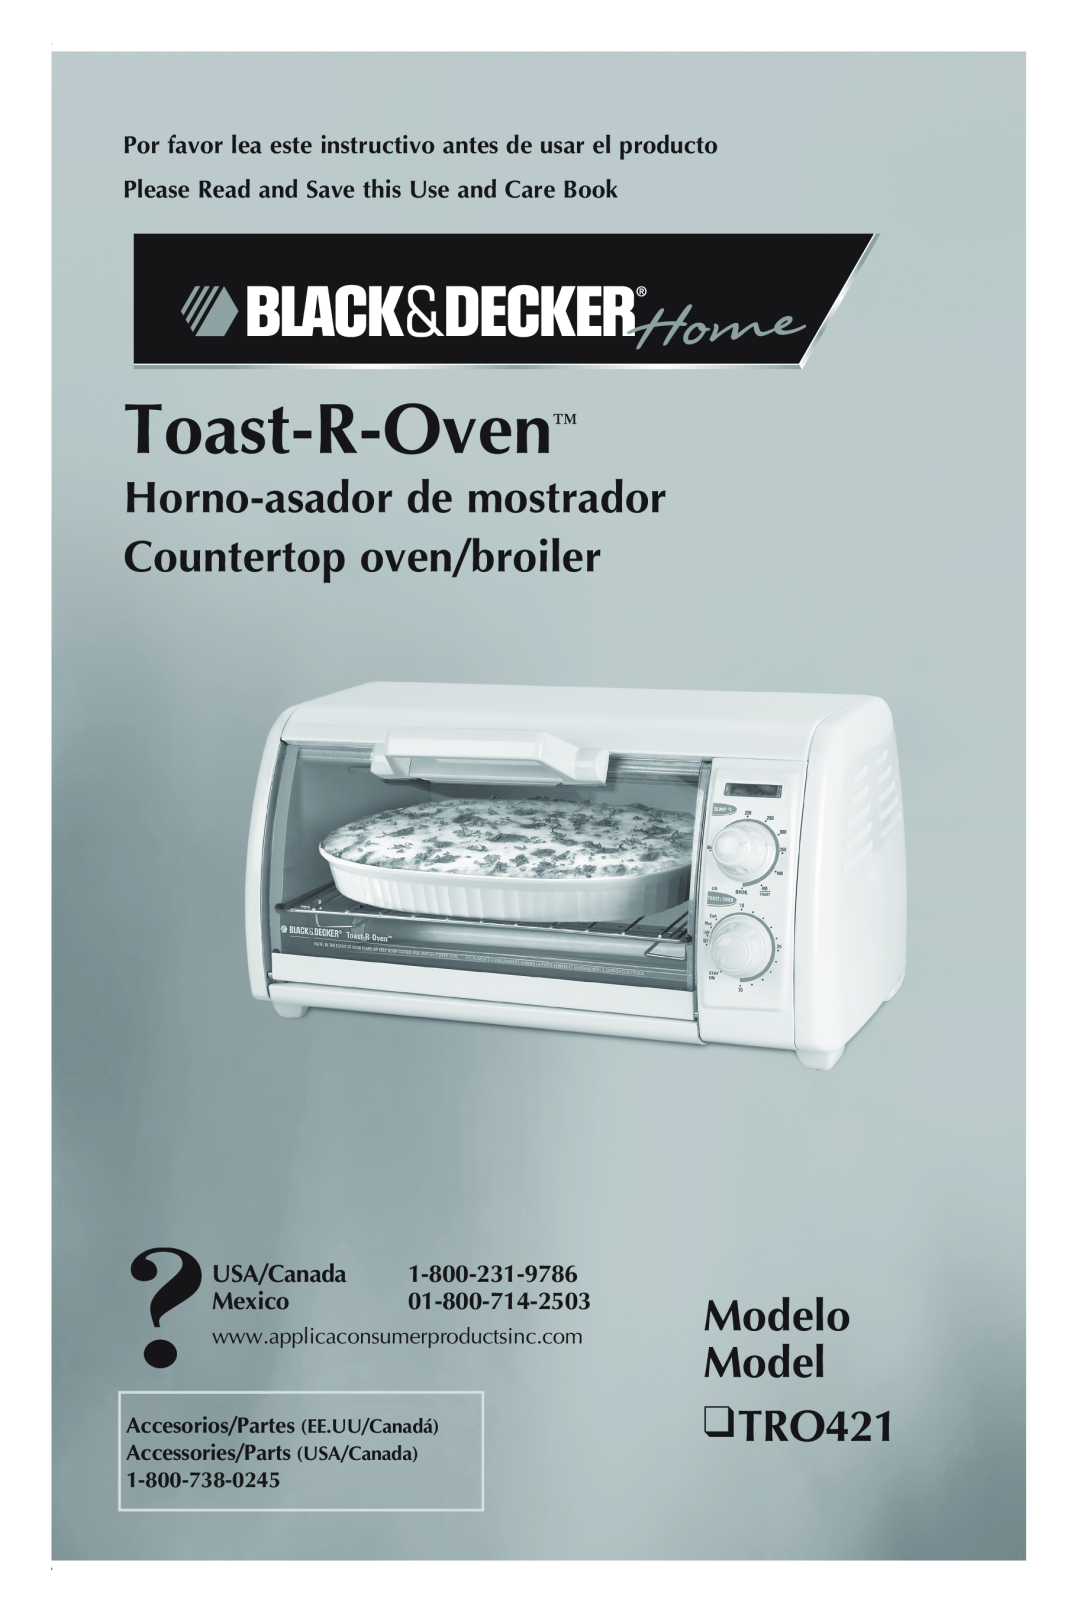 Black & Decker TRO421 manual Toast-R-Oven, Modelo Model, Horno-asadorde mostrador Countertop oven/broiler 